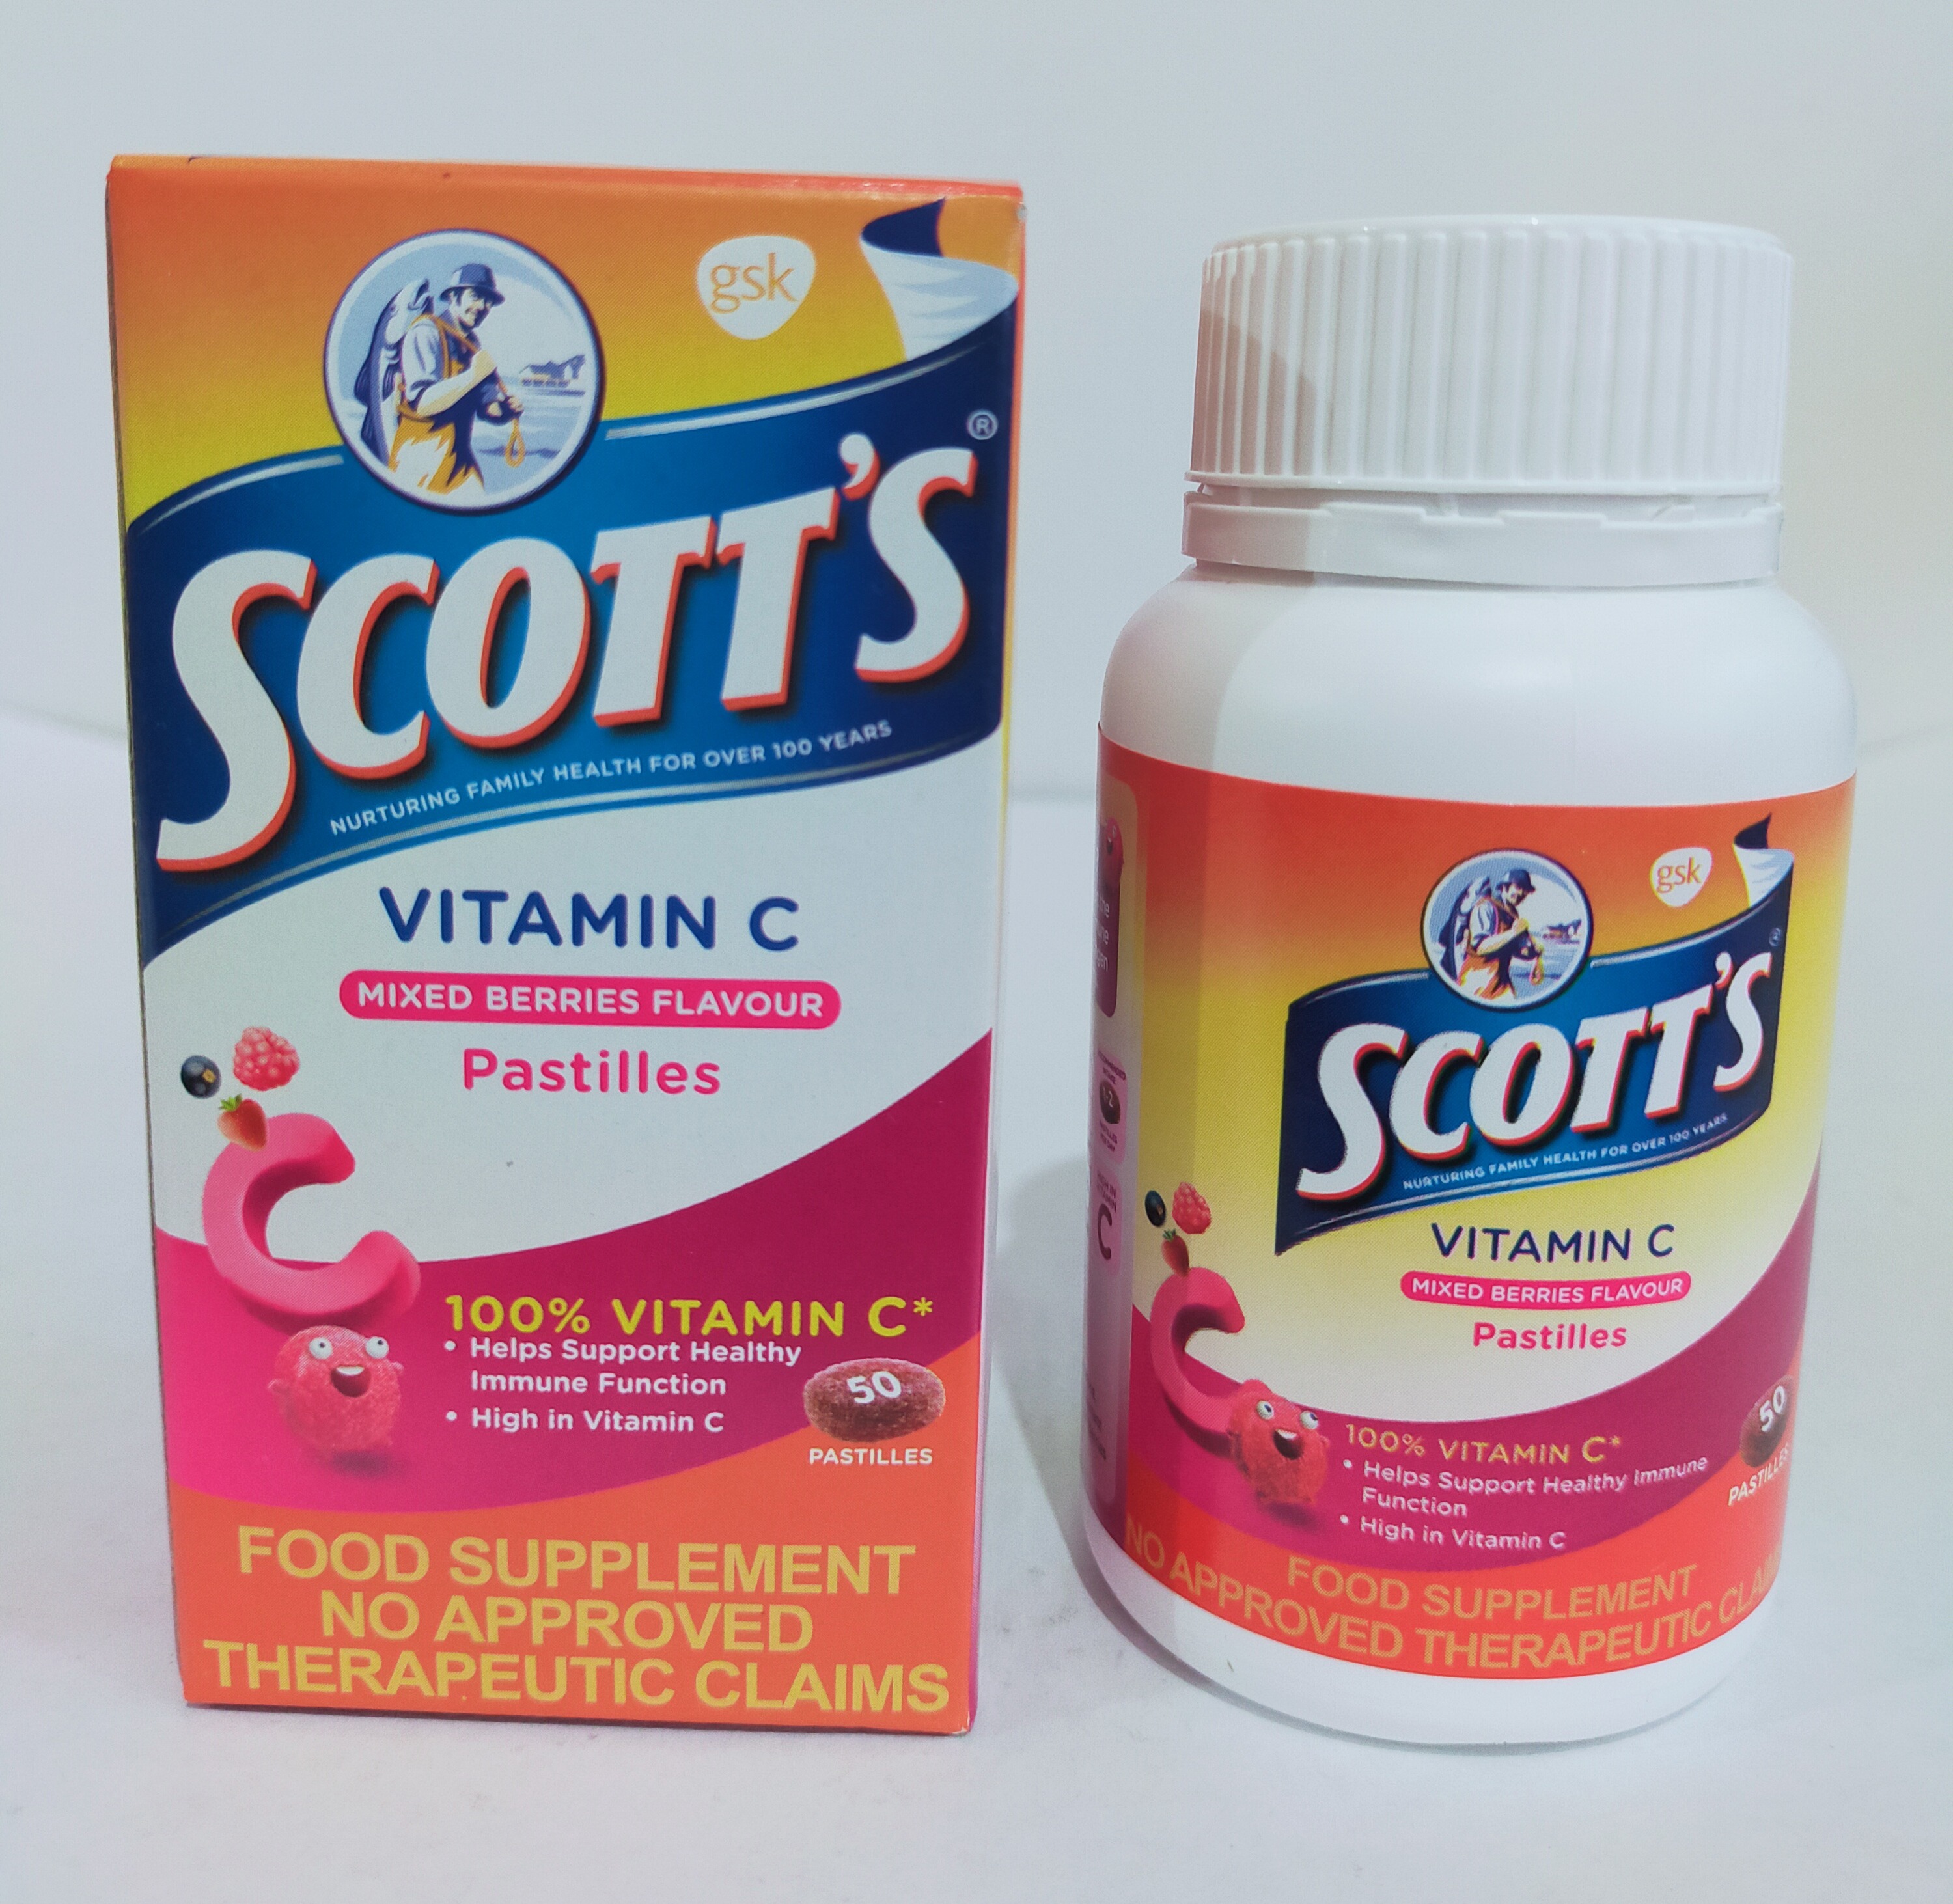 C scotts vitamin Health is